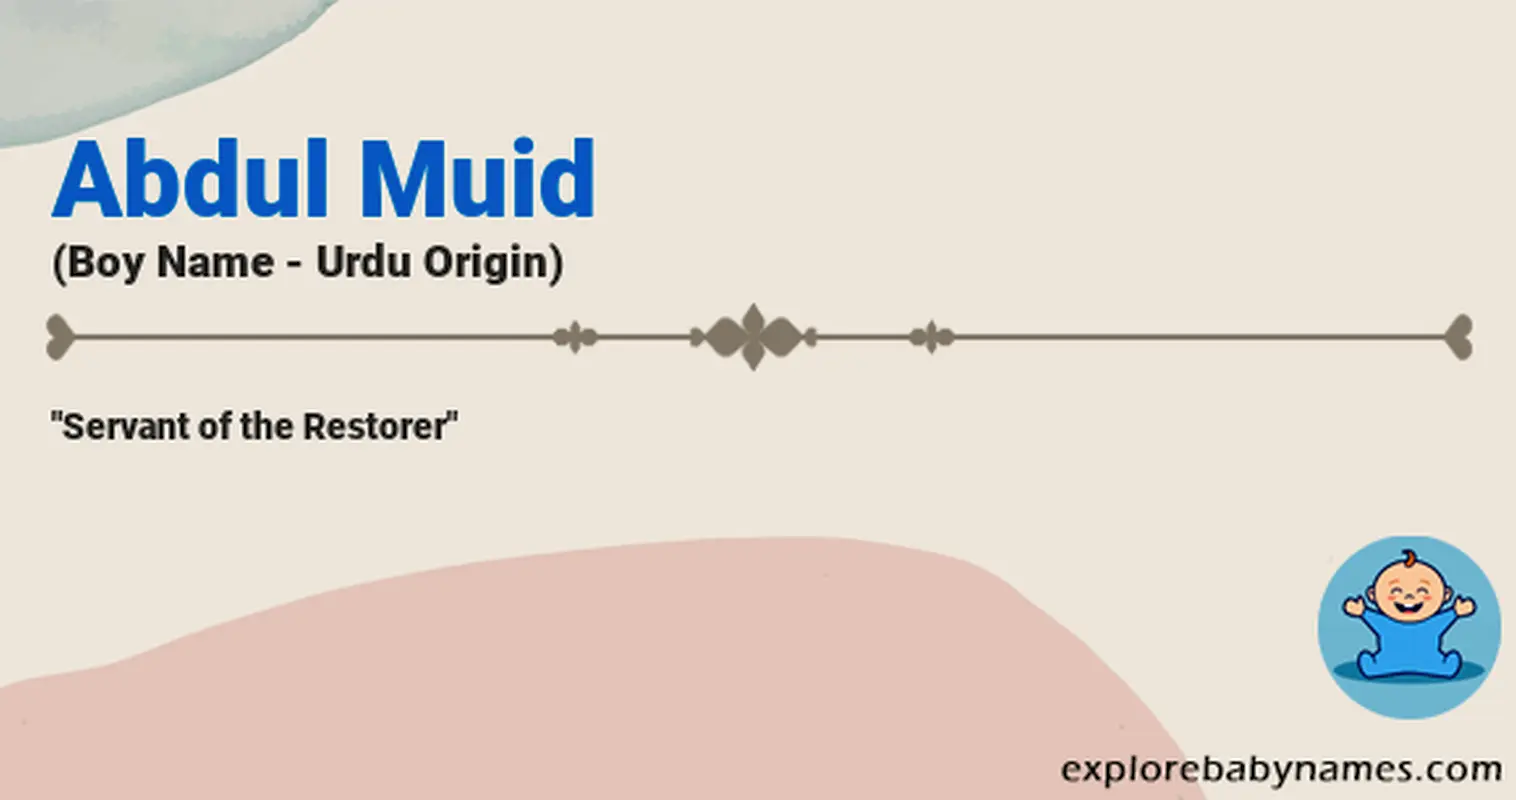 Meaning of Abdul Muid